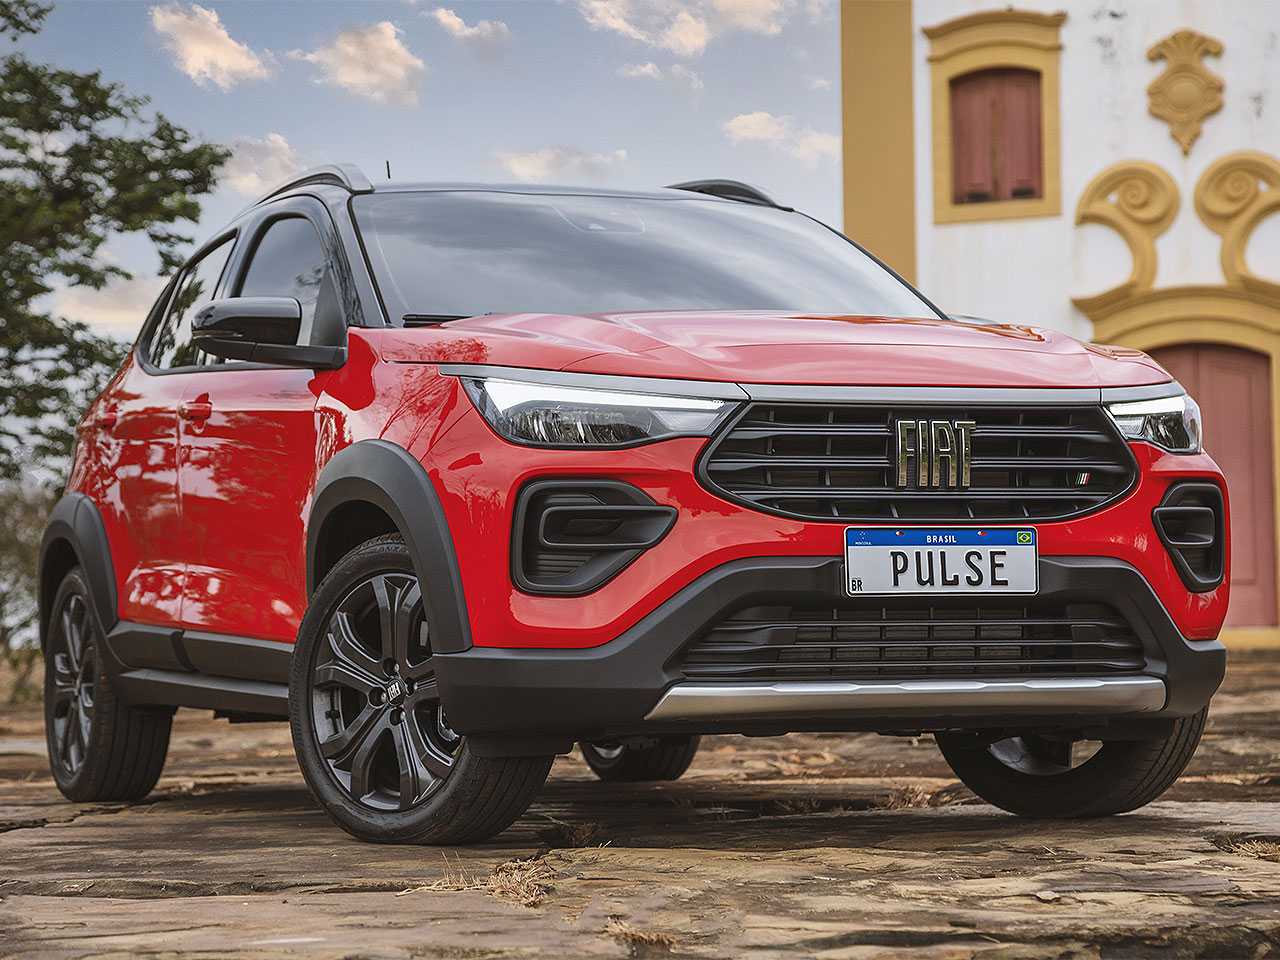 Fiat Pulse é convocado para recall por problema no sensor de estacionamento